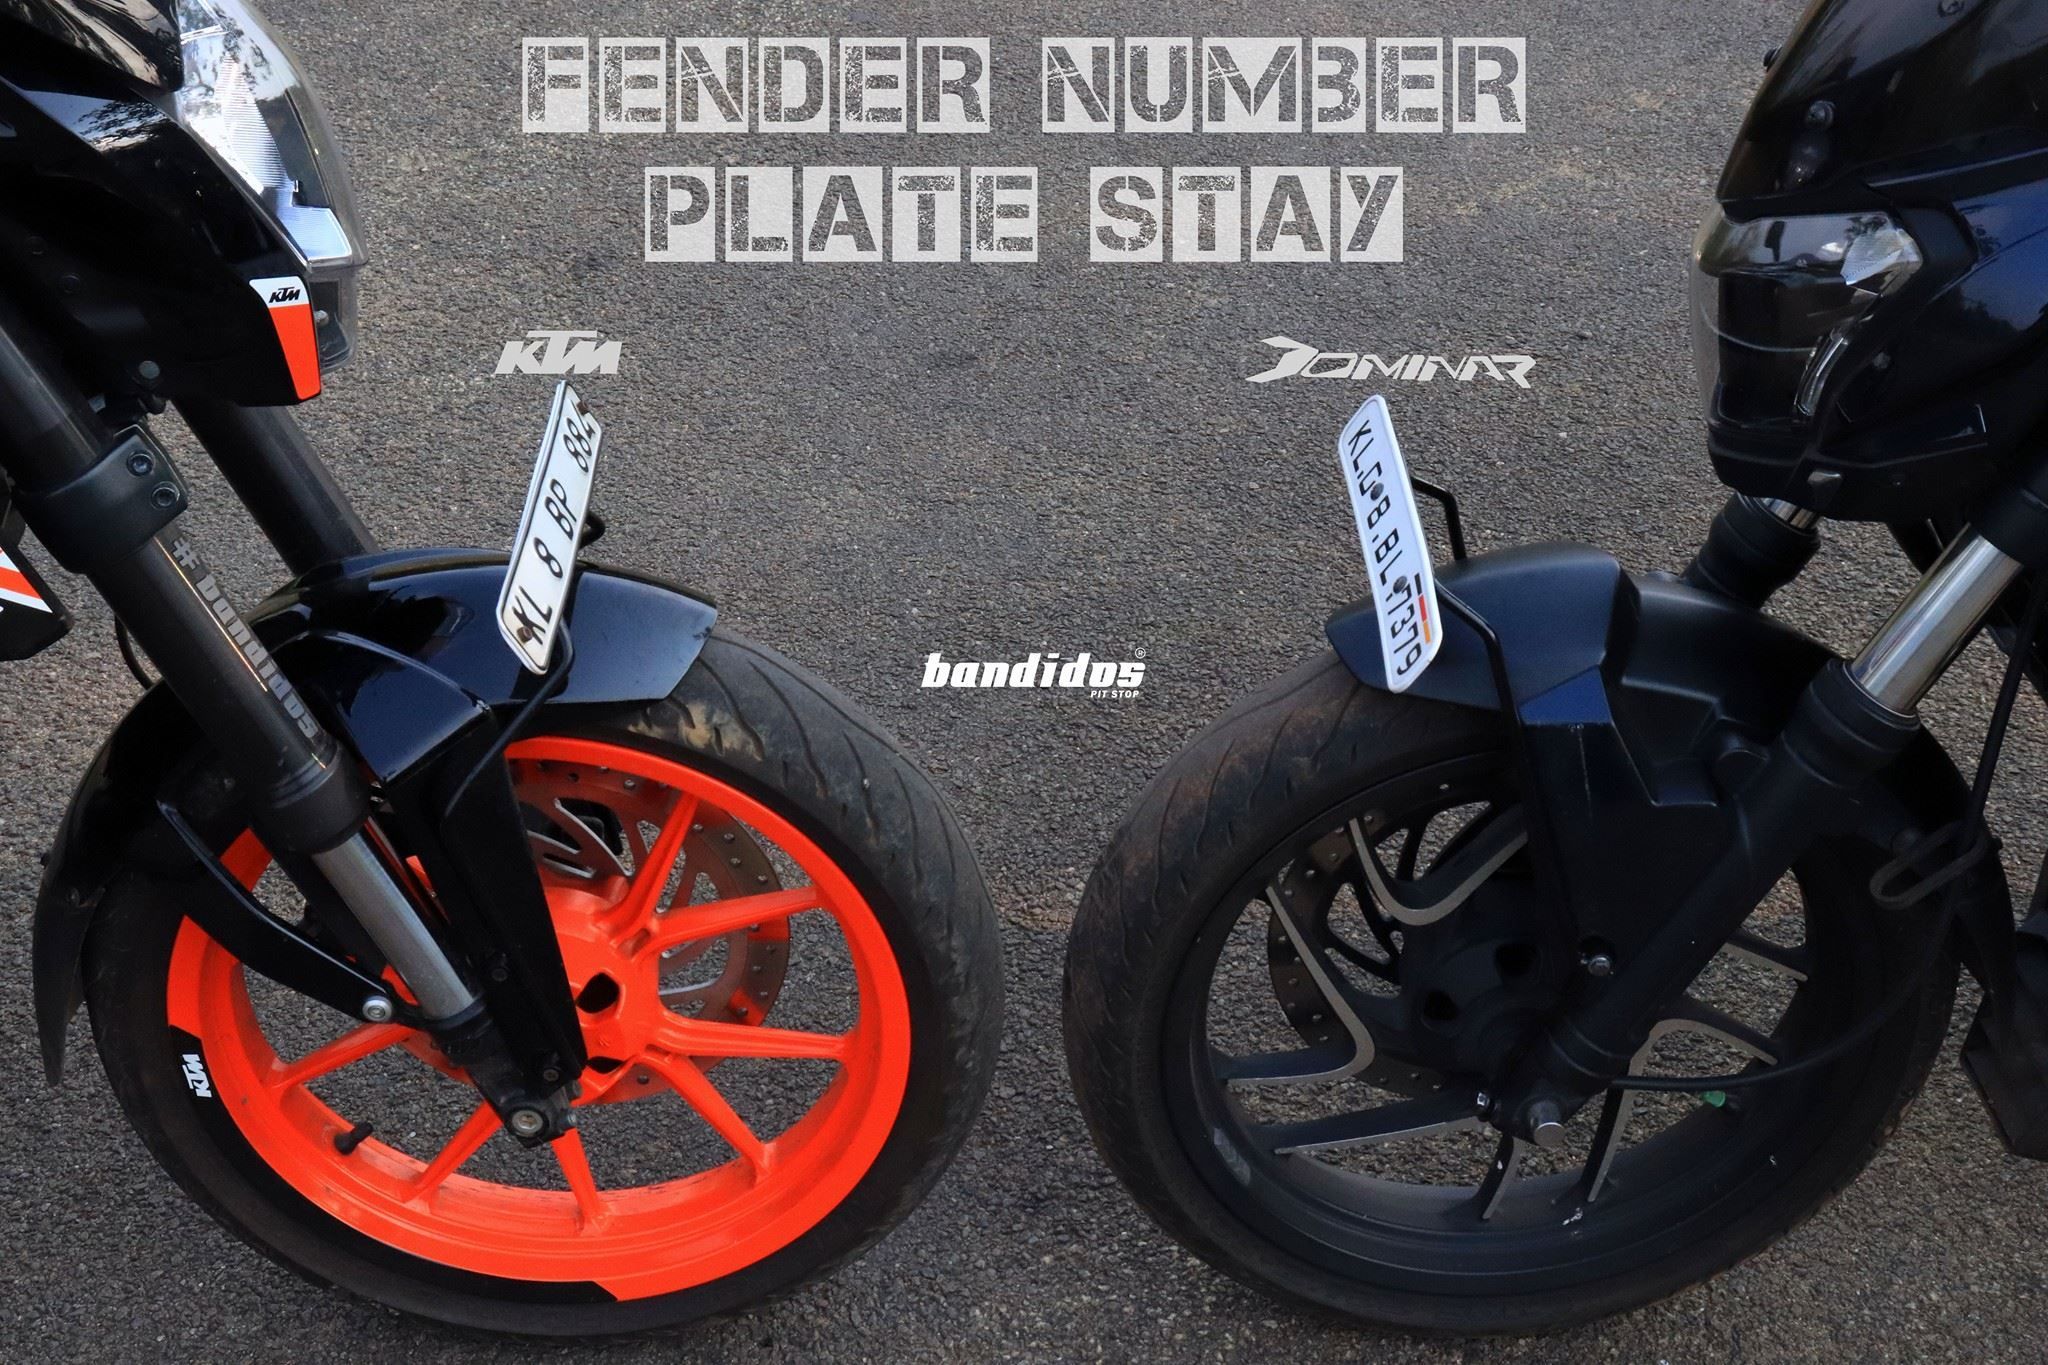 Presenting fender number plate stay for KTM and Bajaj Dominar